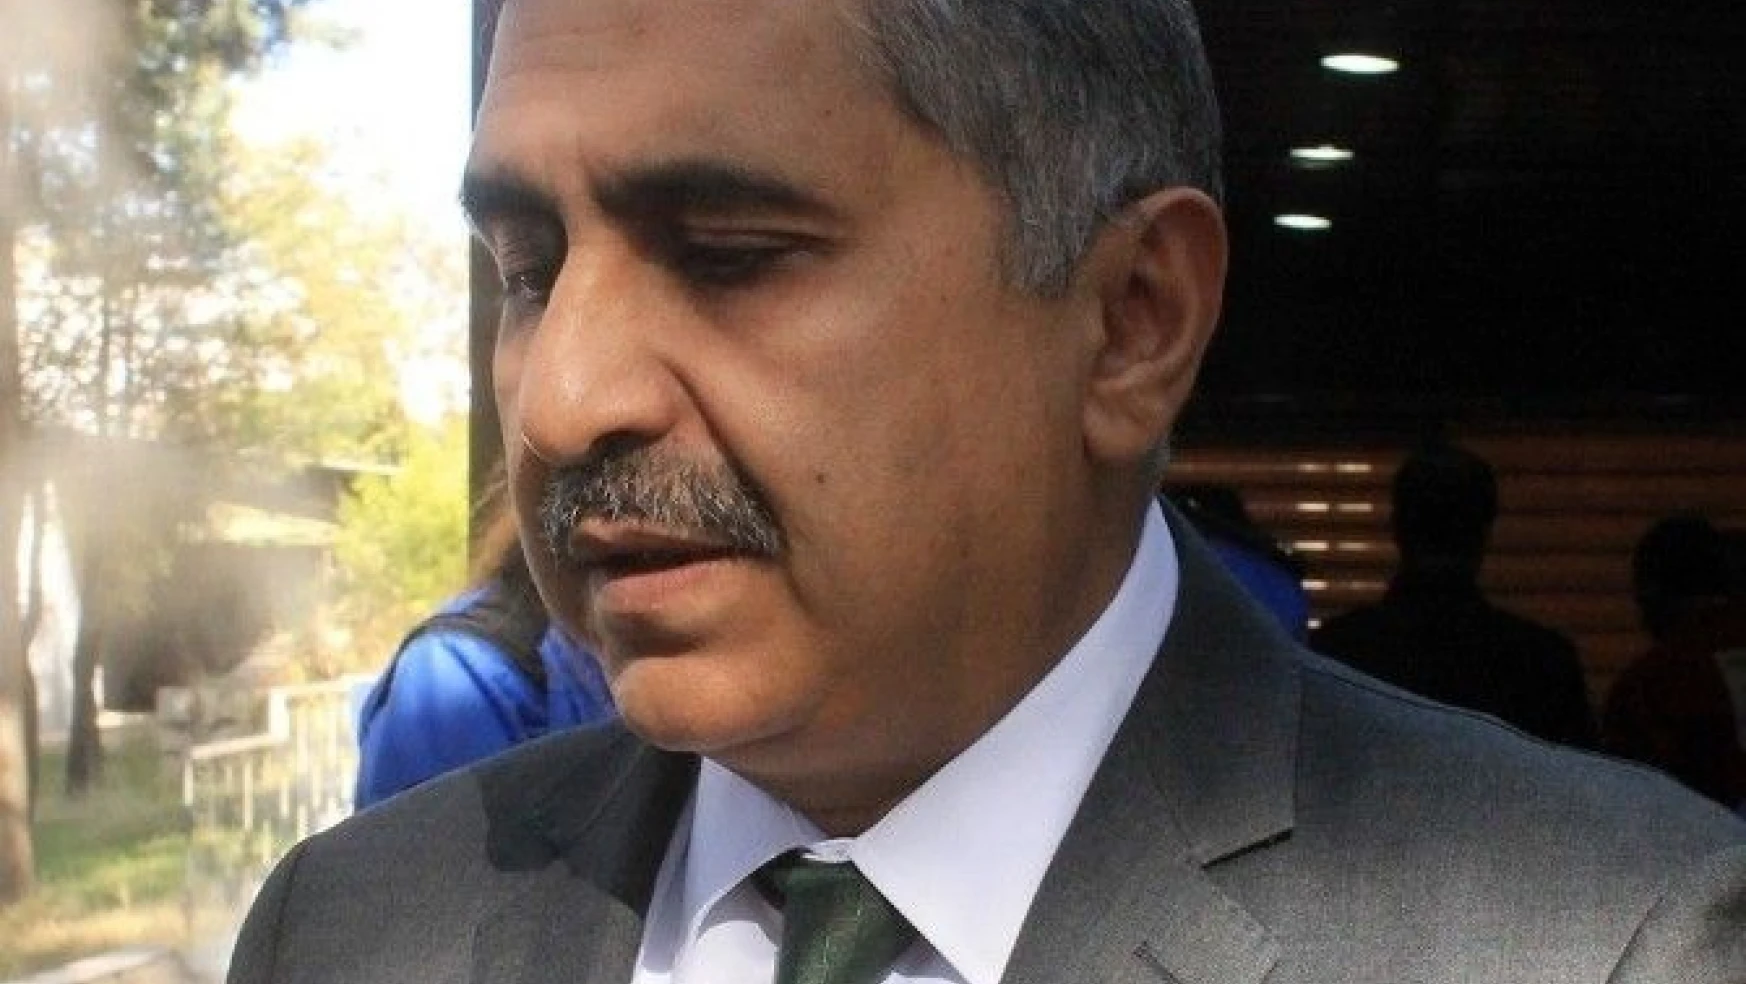 Mardin Valisi Koçak'tan hain saldırıya ilişkin açıklama